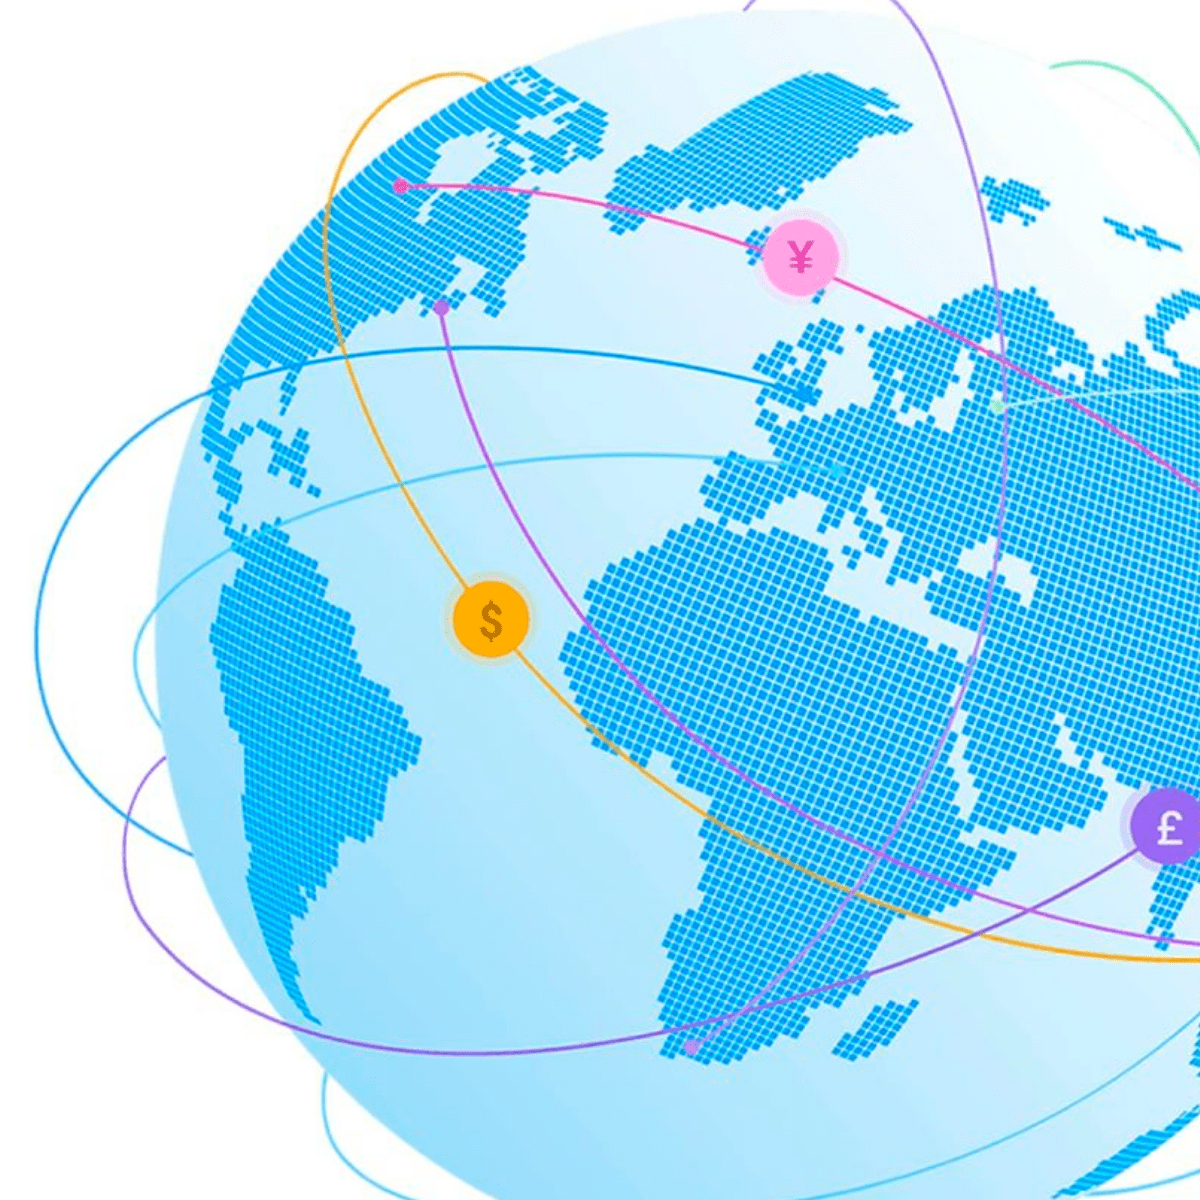 Trolley lance une API de paiement mondiale pour révolutionner les paiements dans plus de 220 pays.